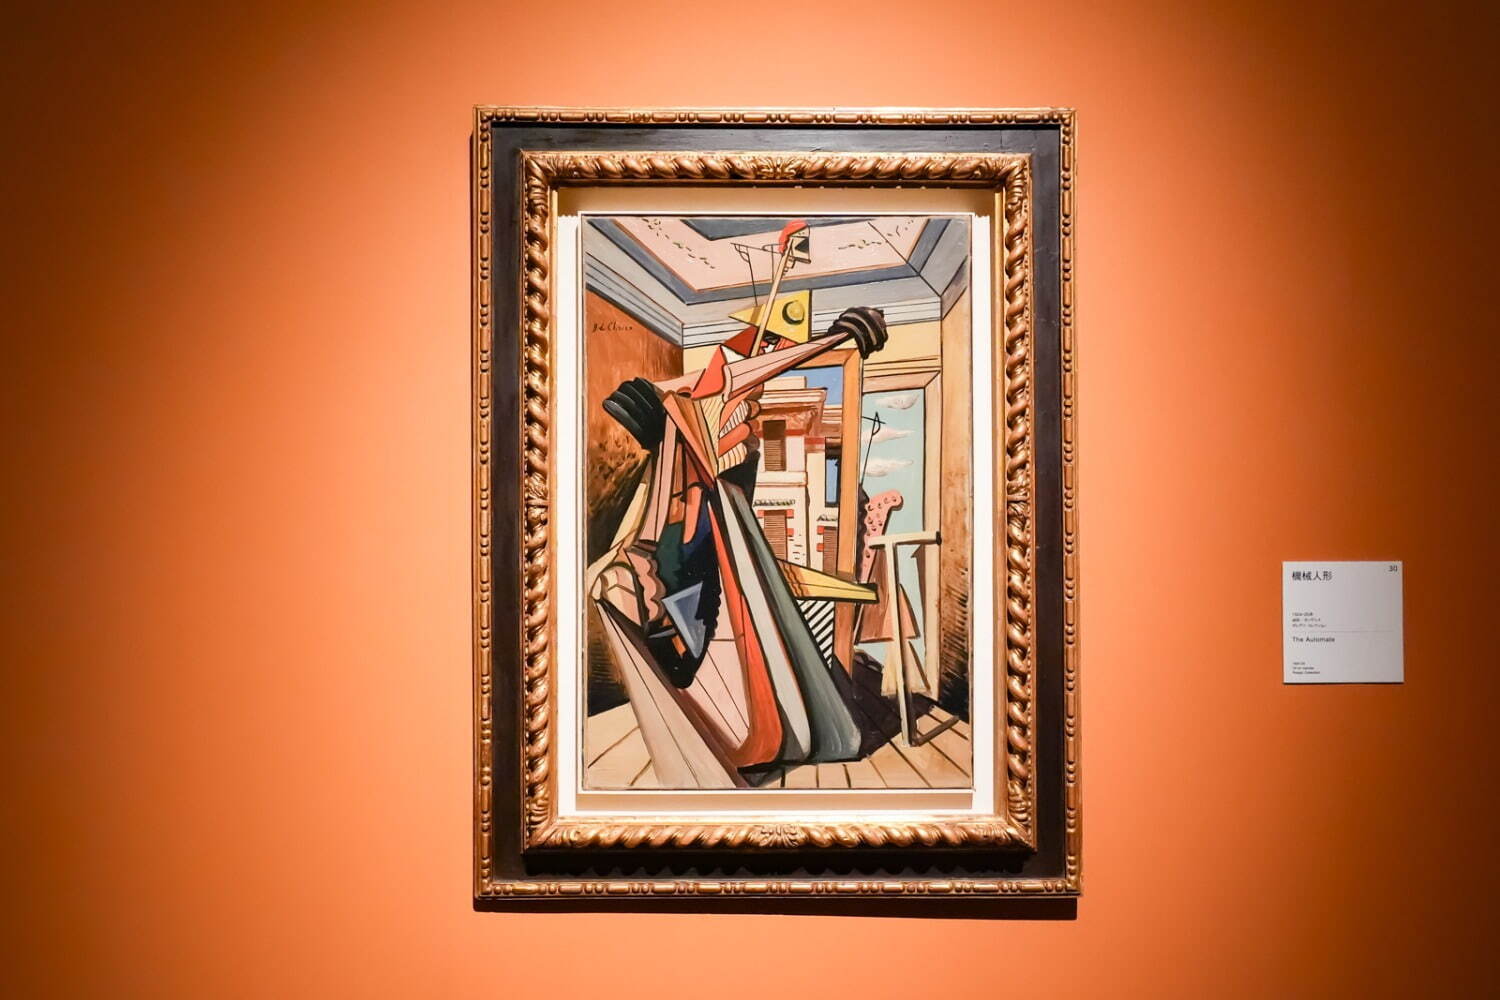 ジョルジョ・デ・キリコ 《機械人形》 1924-25年
ポレグリ・コレクション